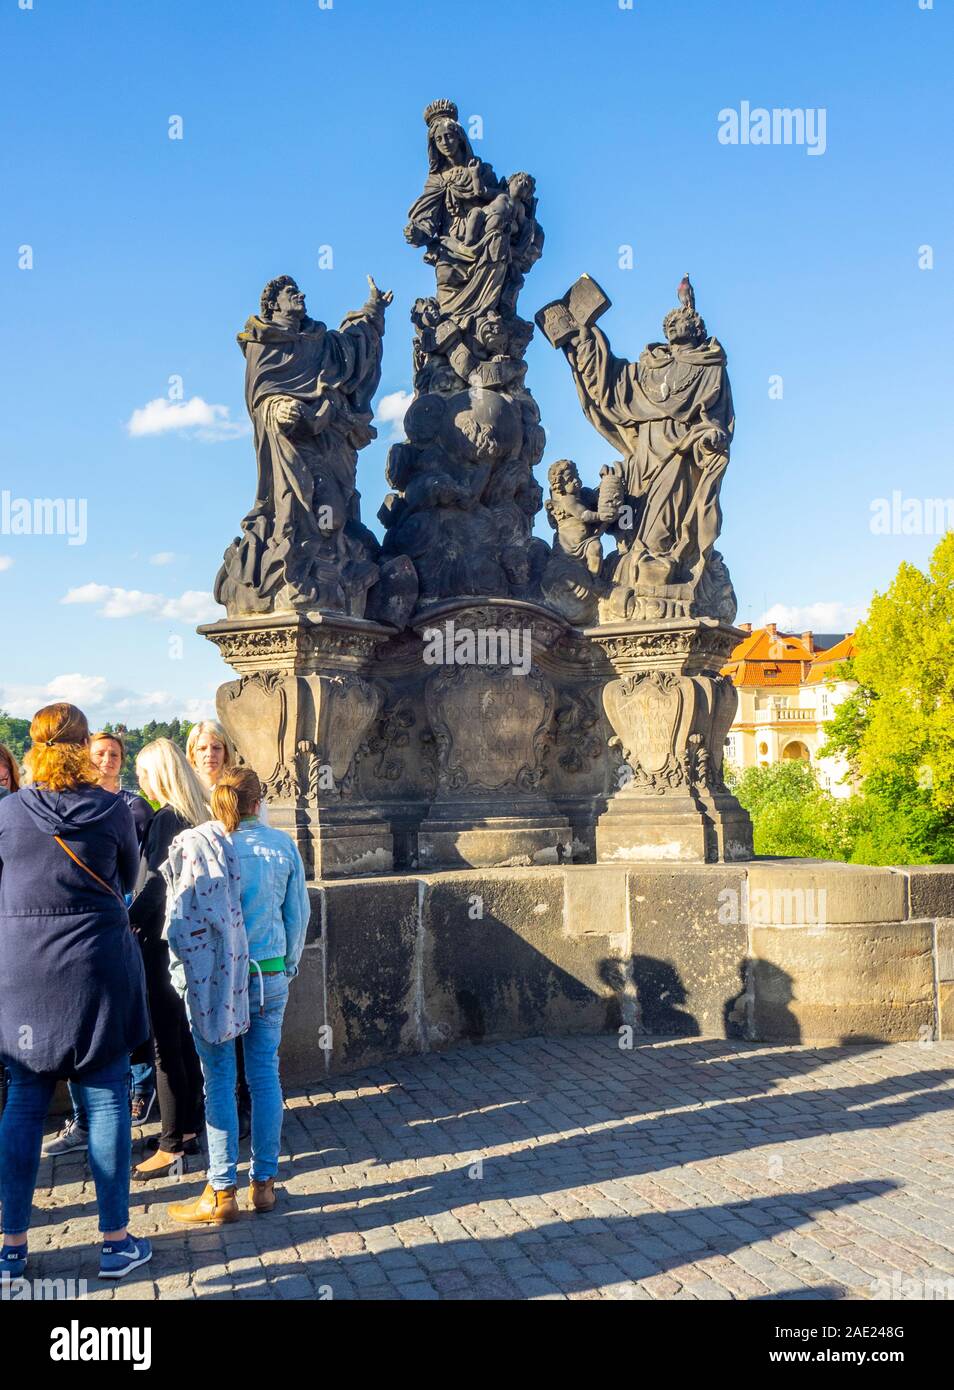 Les touristes en réplique des statues de Madonna, Saint Dominique et Thomas d'Aquin sur le Charles Bridge Prague République tchèque. Banque D'Images